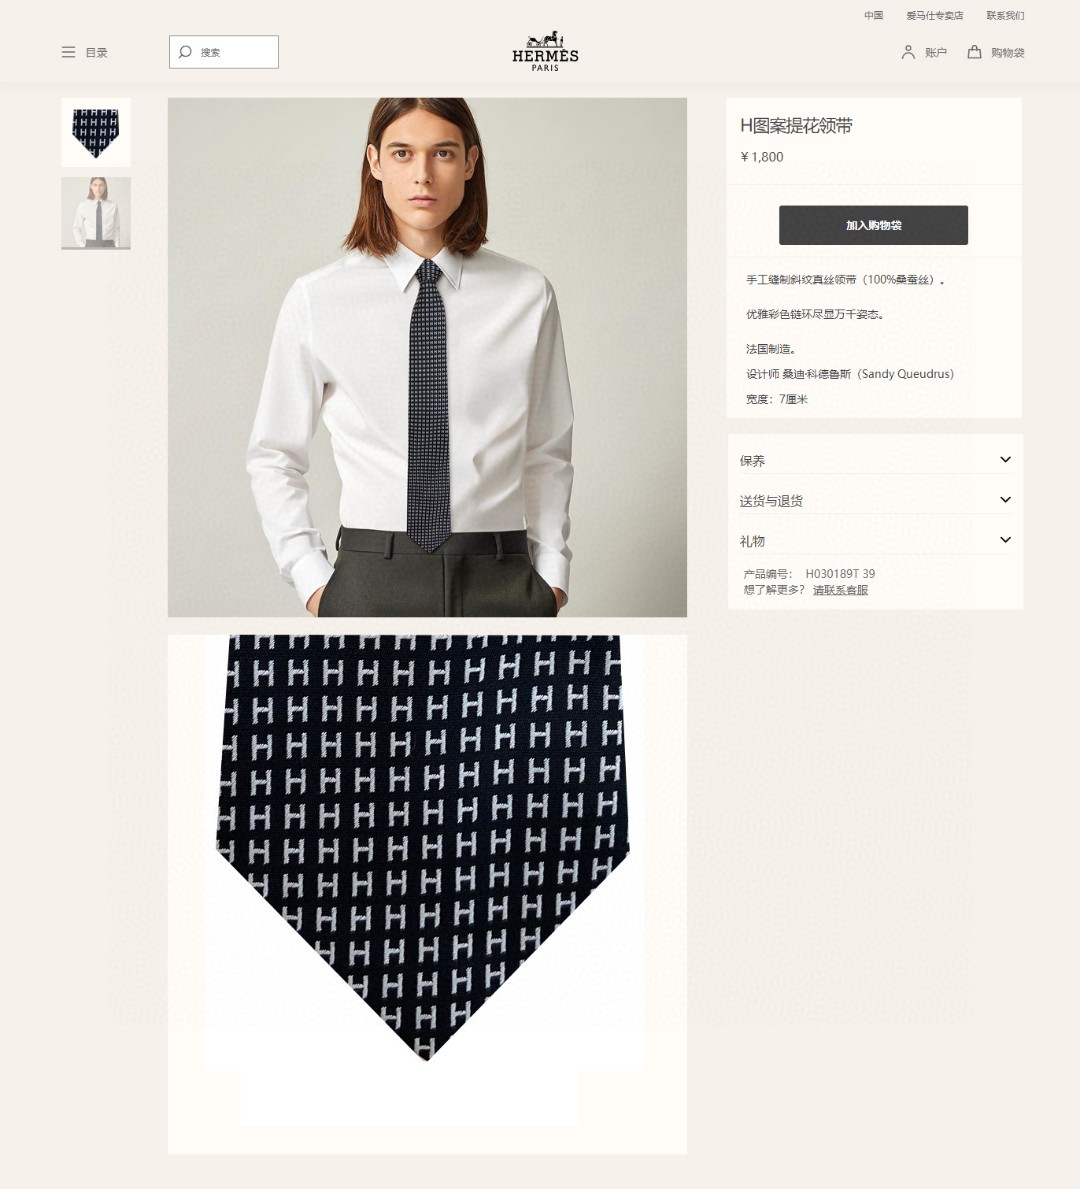 男士新款领带系列H图案提花领带稀有H